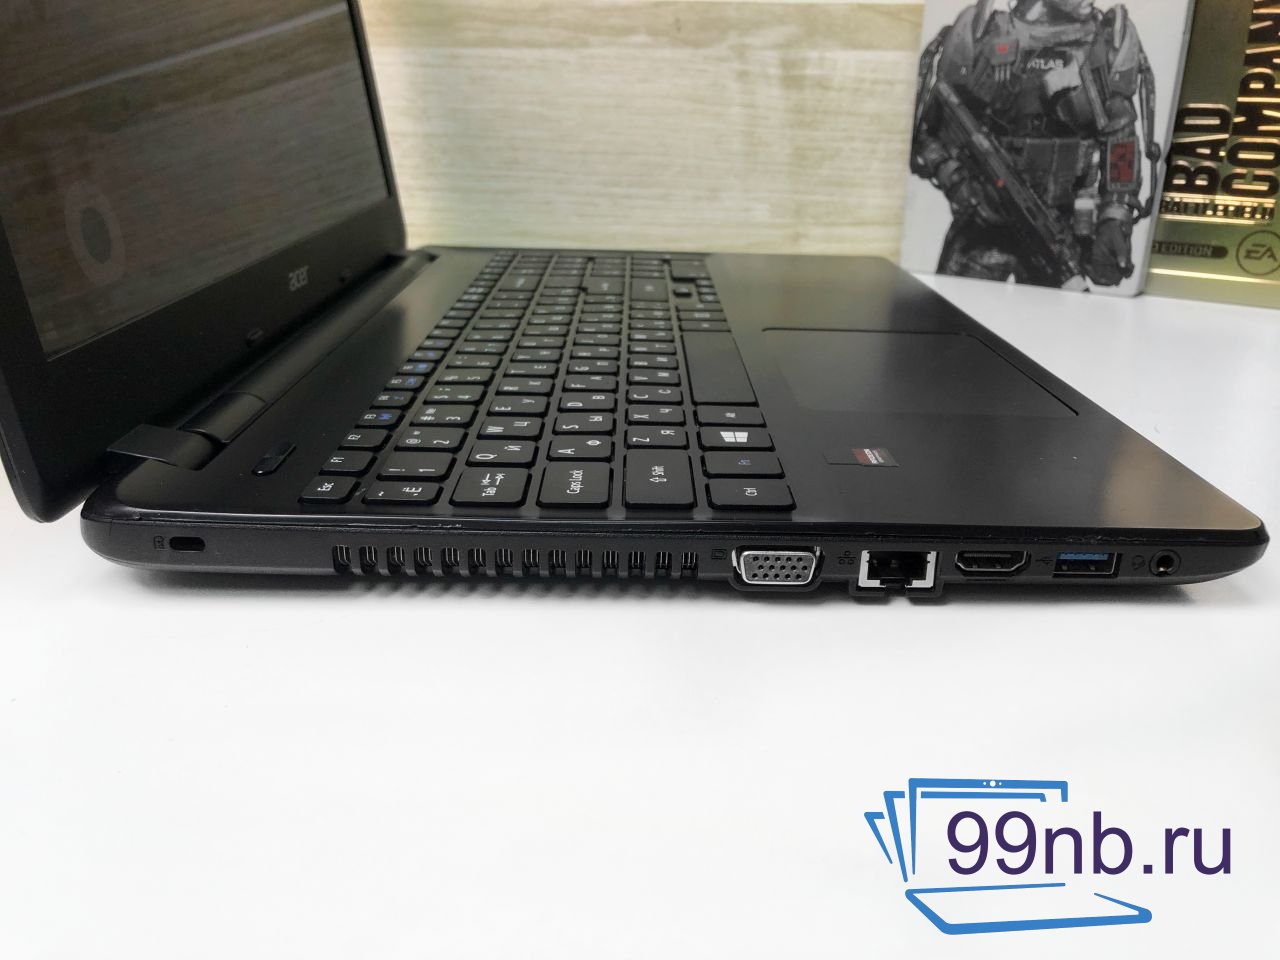  Ноутбук Acer Asprie для работы и танков 8 Gb ОЗУ